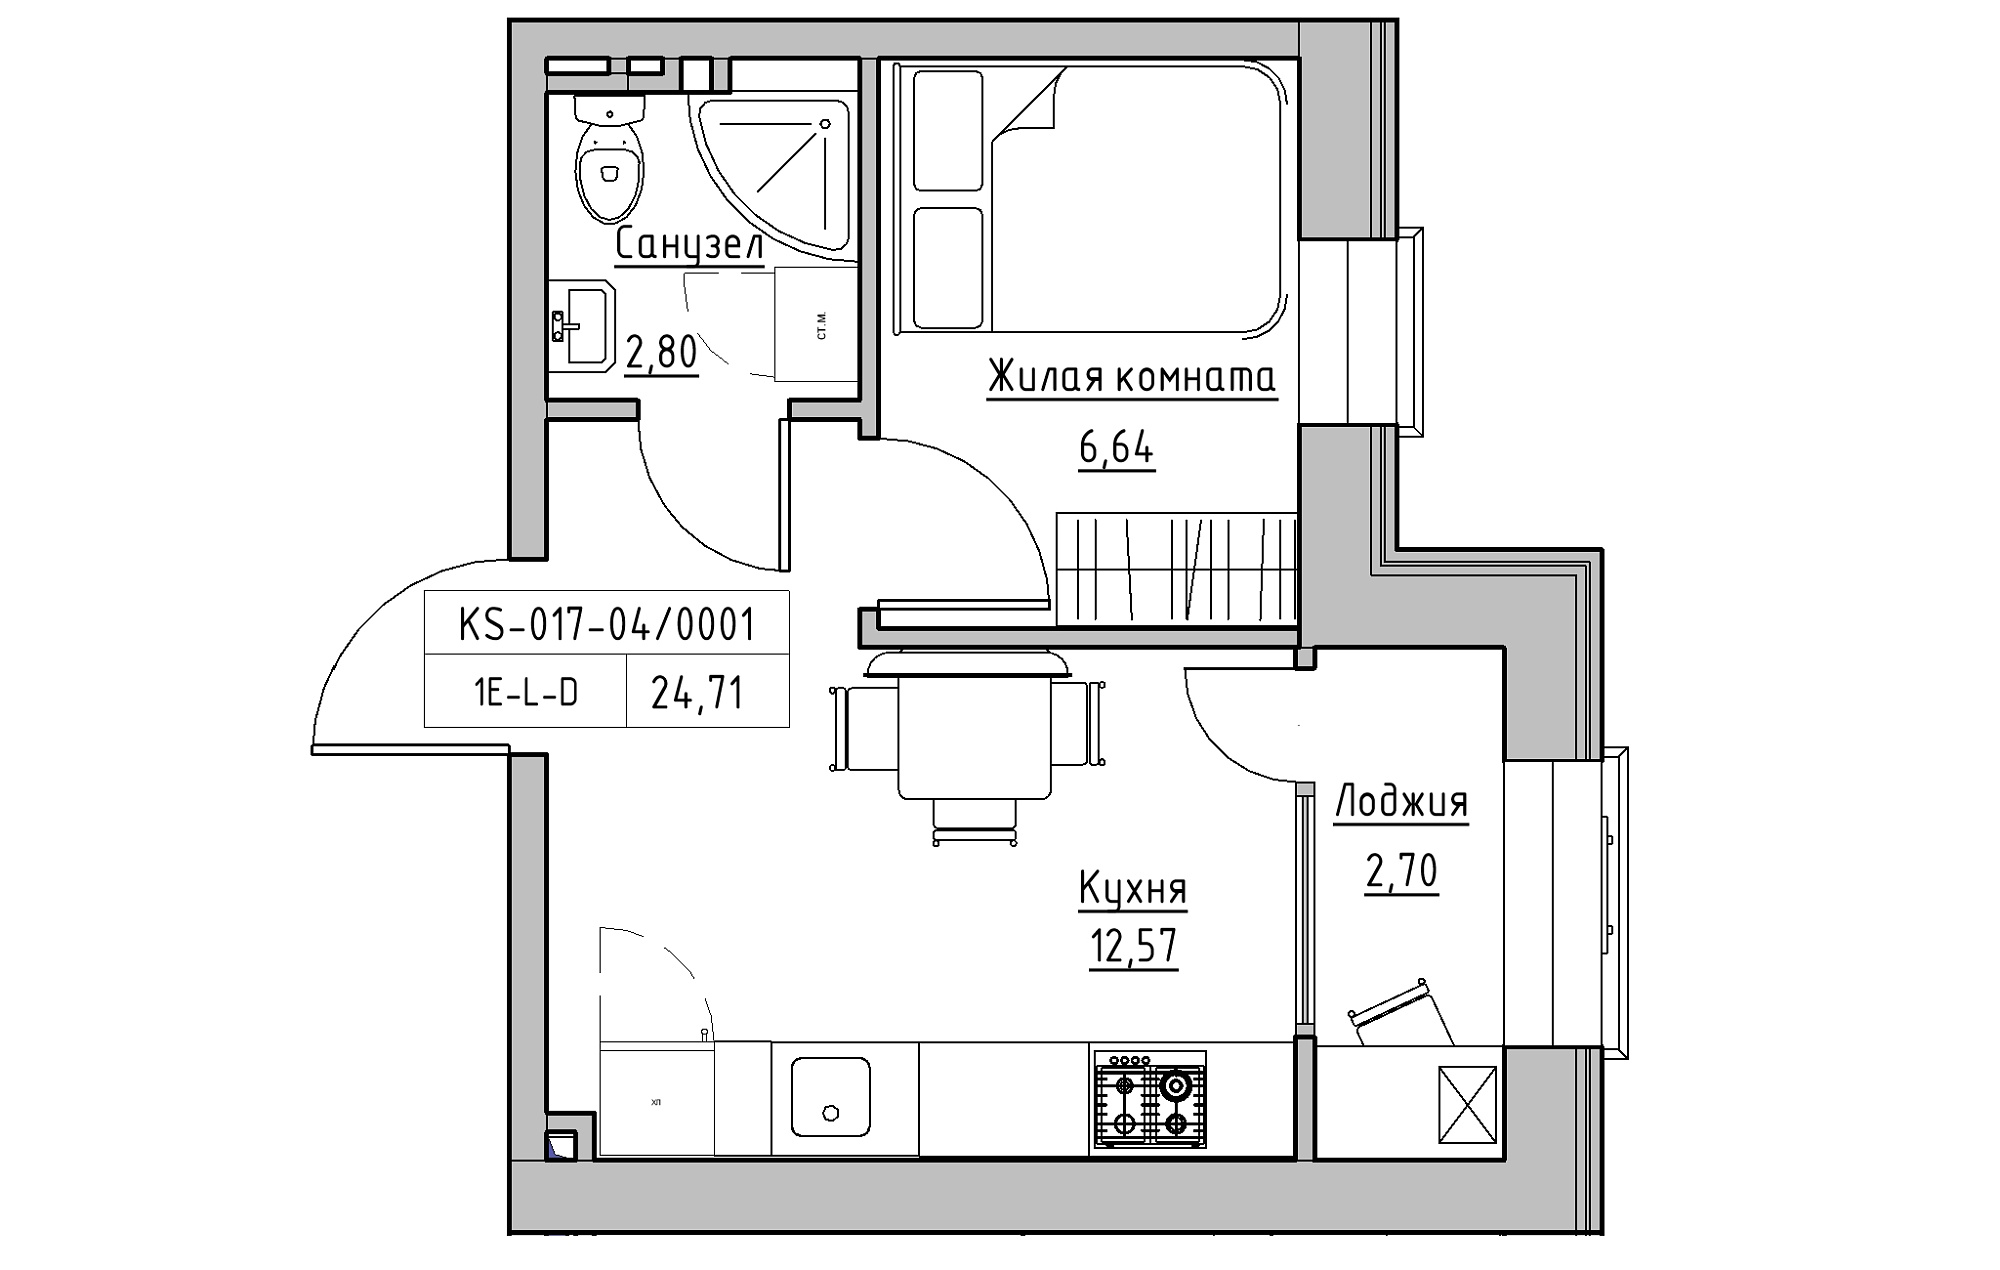 Планировка 1-к квартира площей 24.71м2, KS-017-04/0001.